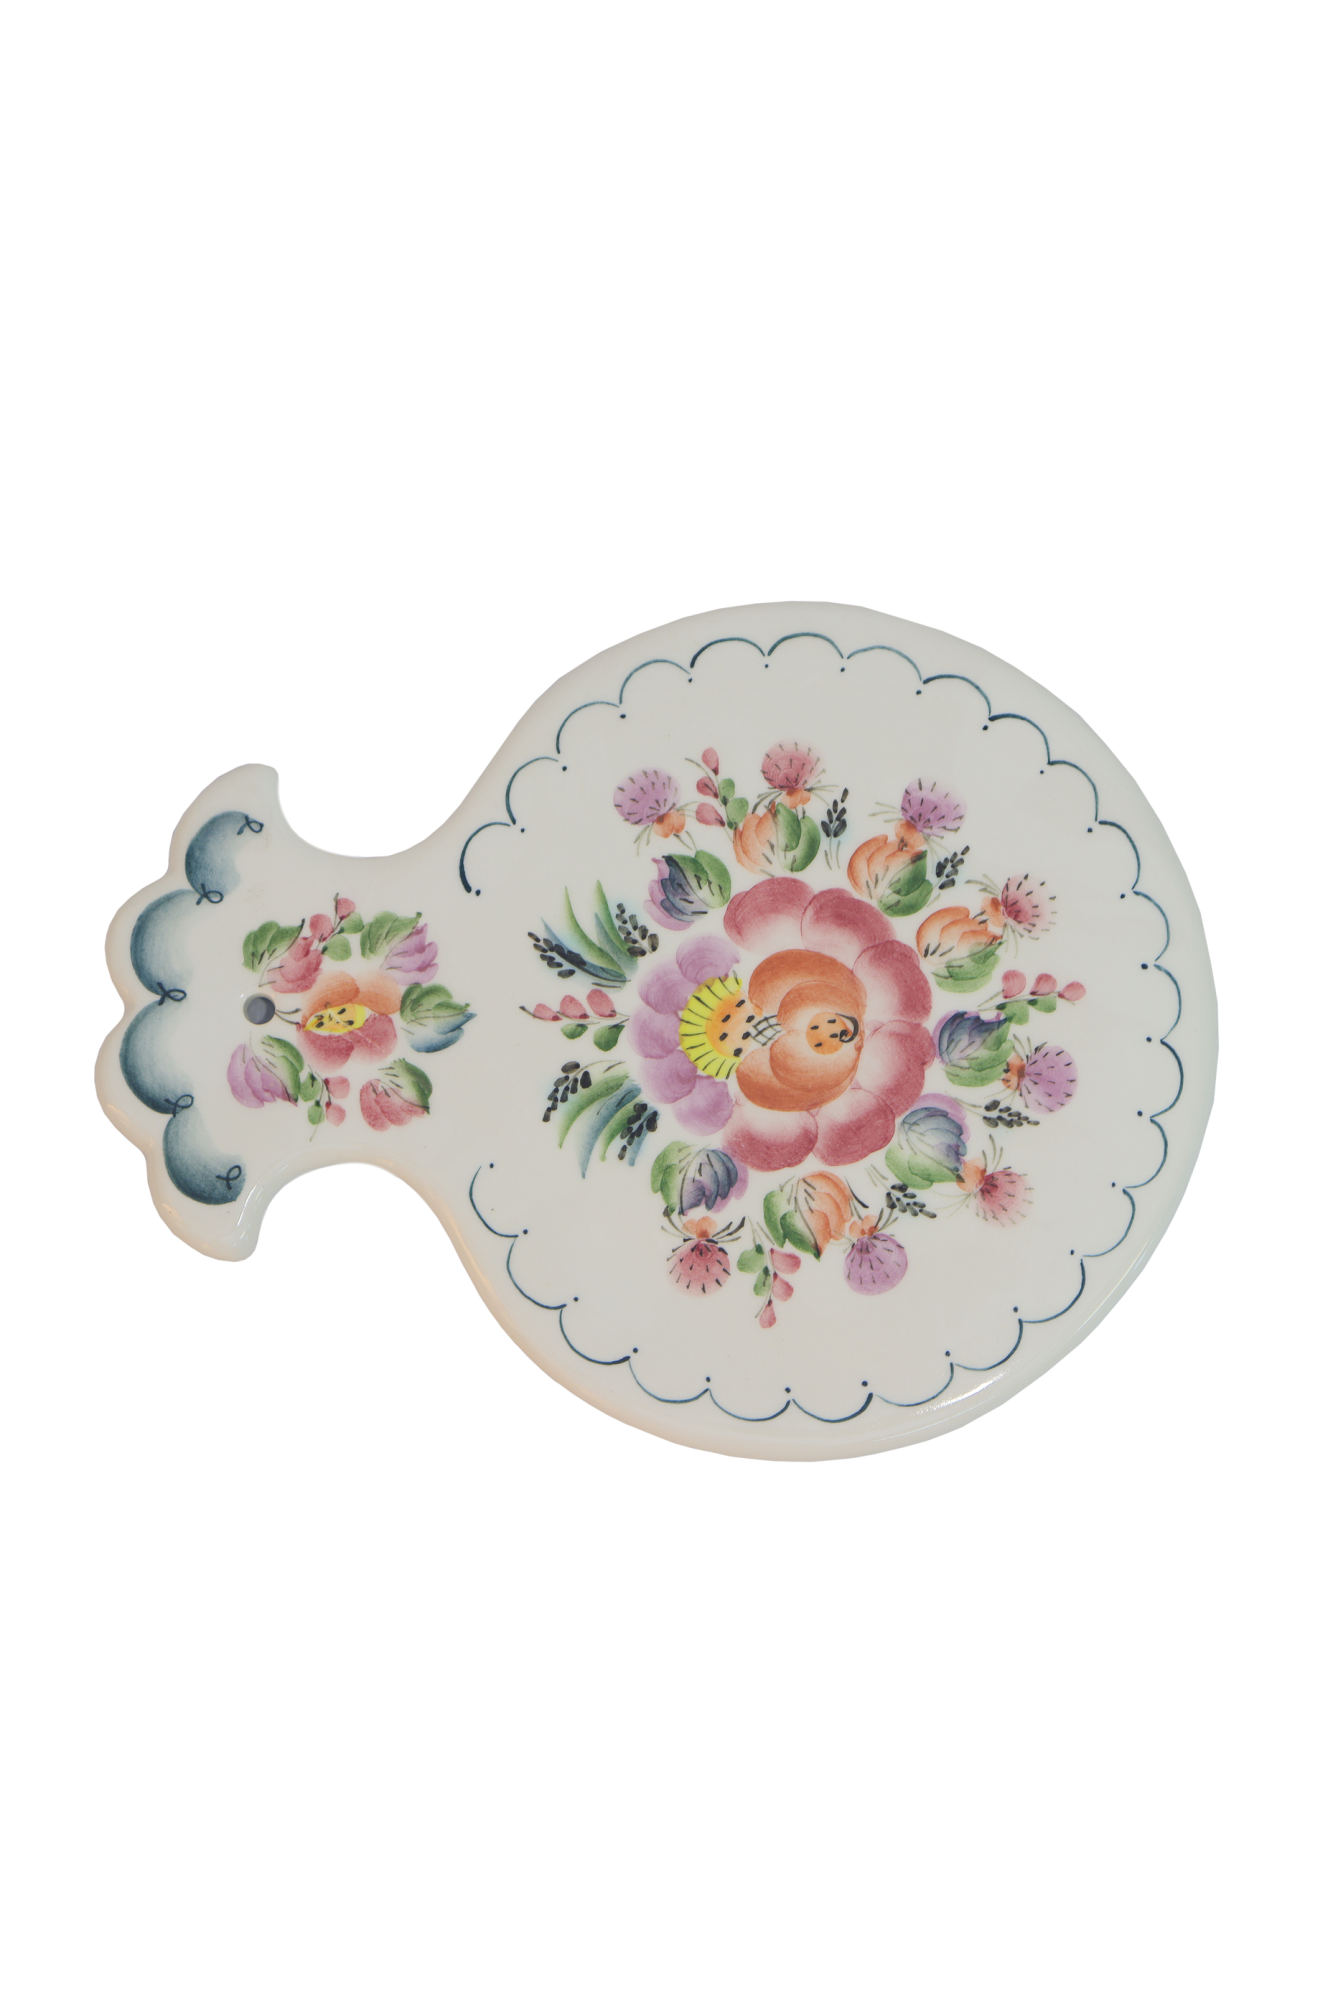 фото Доска разделочная семикаракорская керамика яблоко - цветы